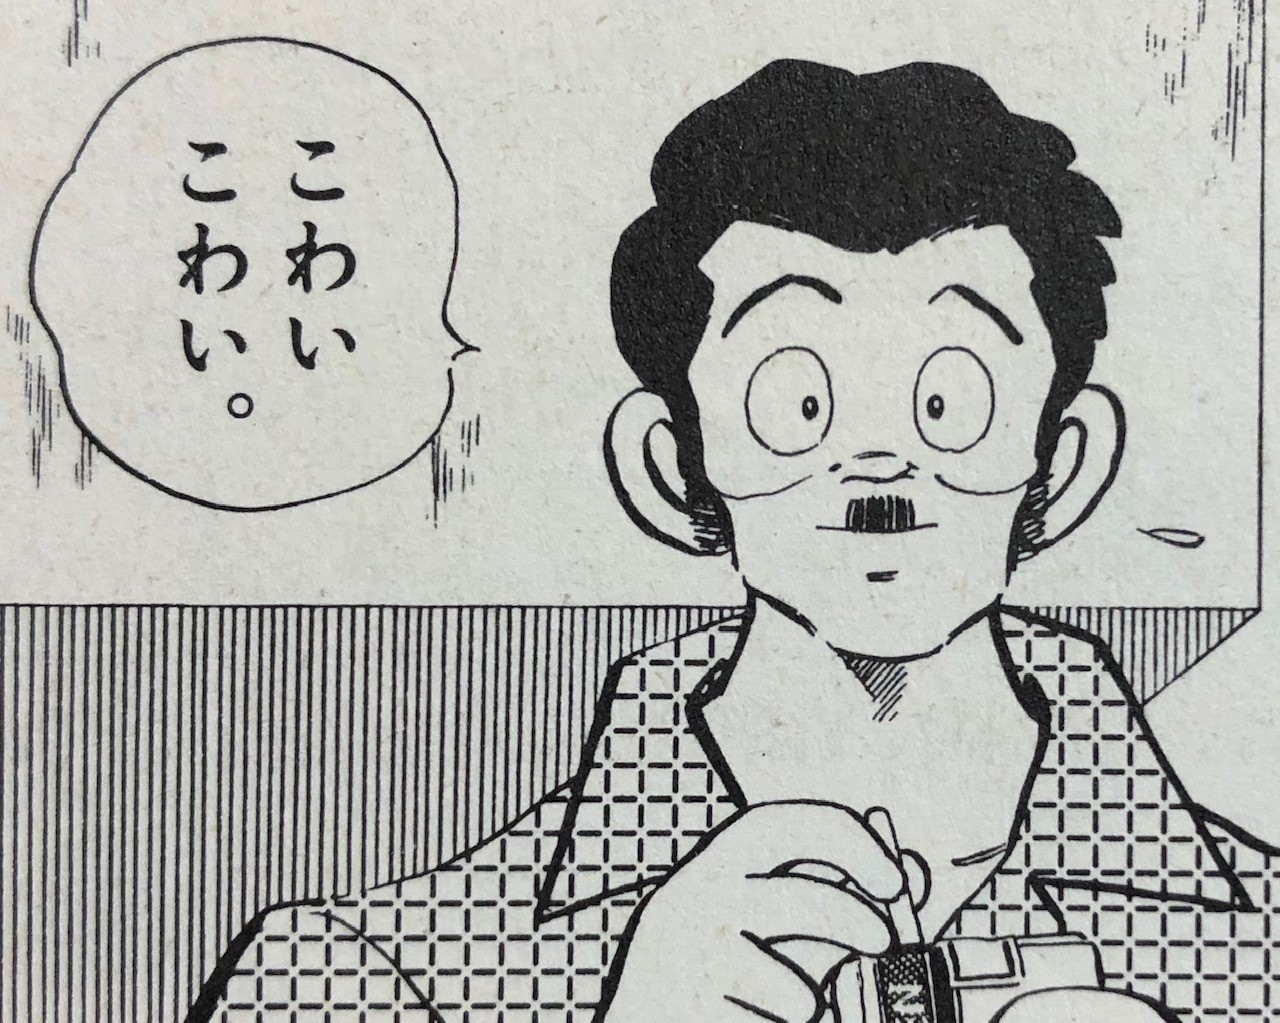 タッチ アニメ 漫画 のネタバレ解説まとめ 3 8 Renote リノート